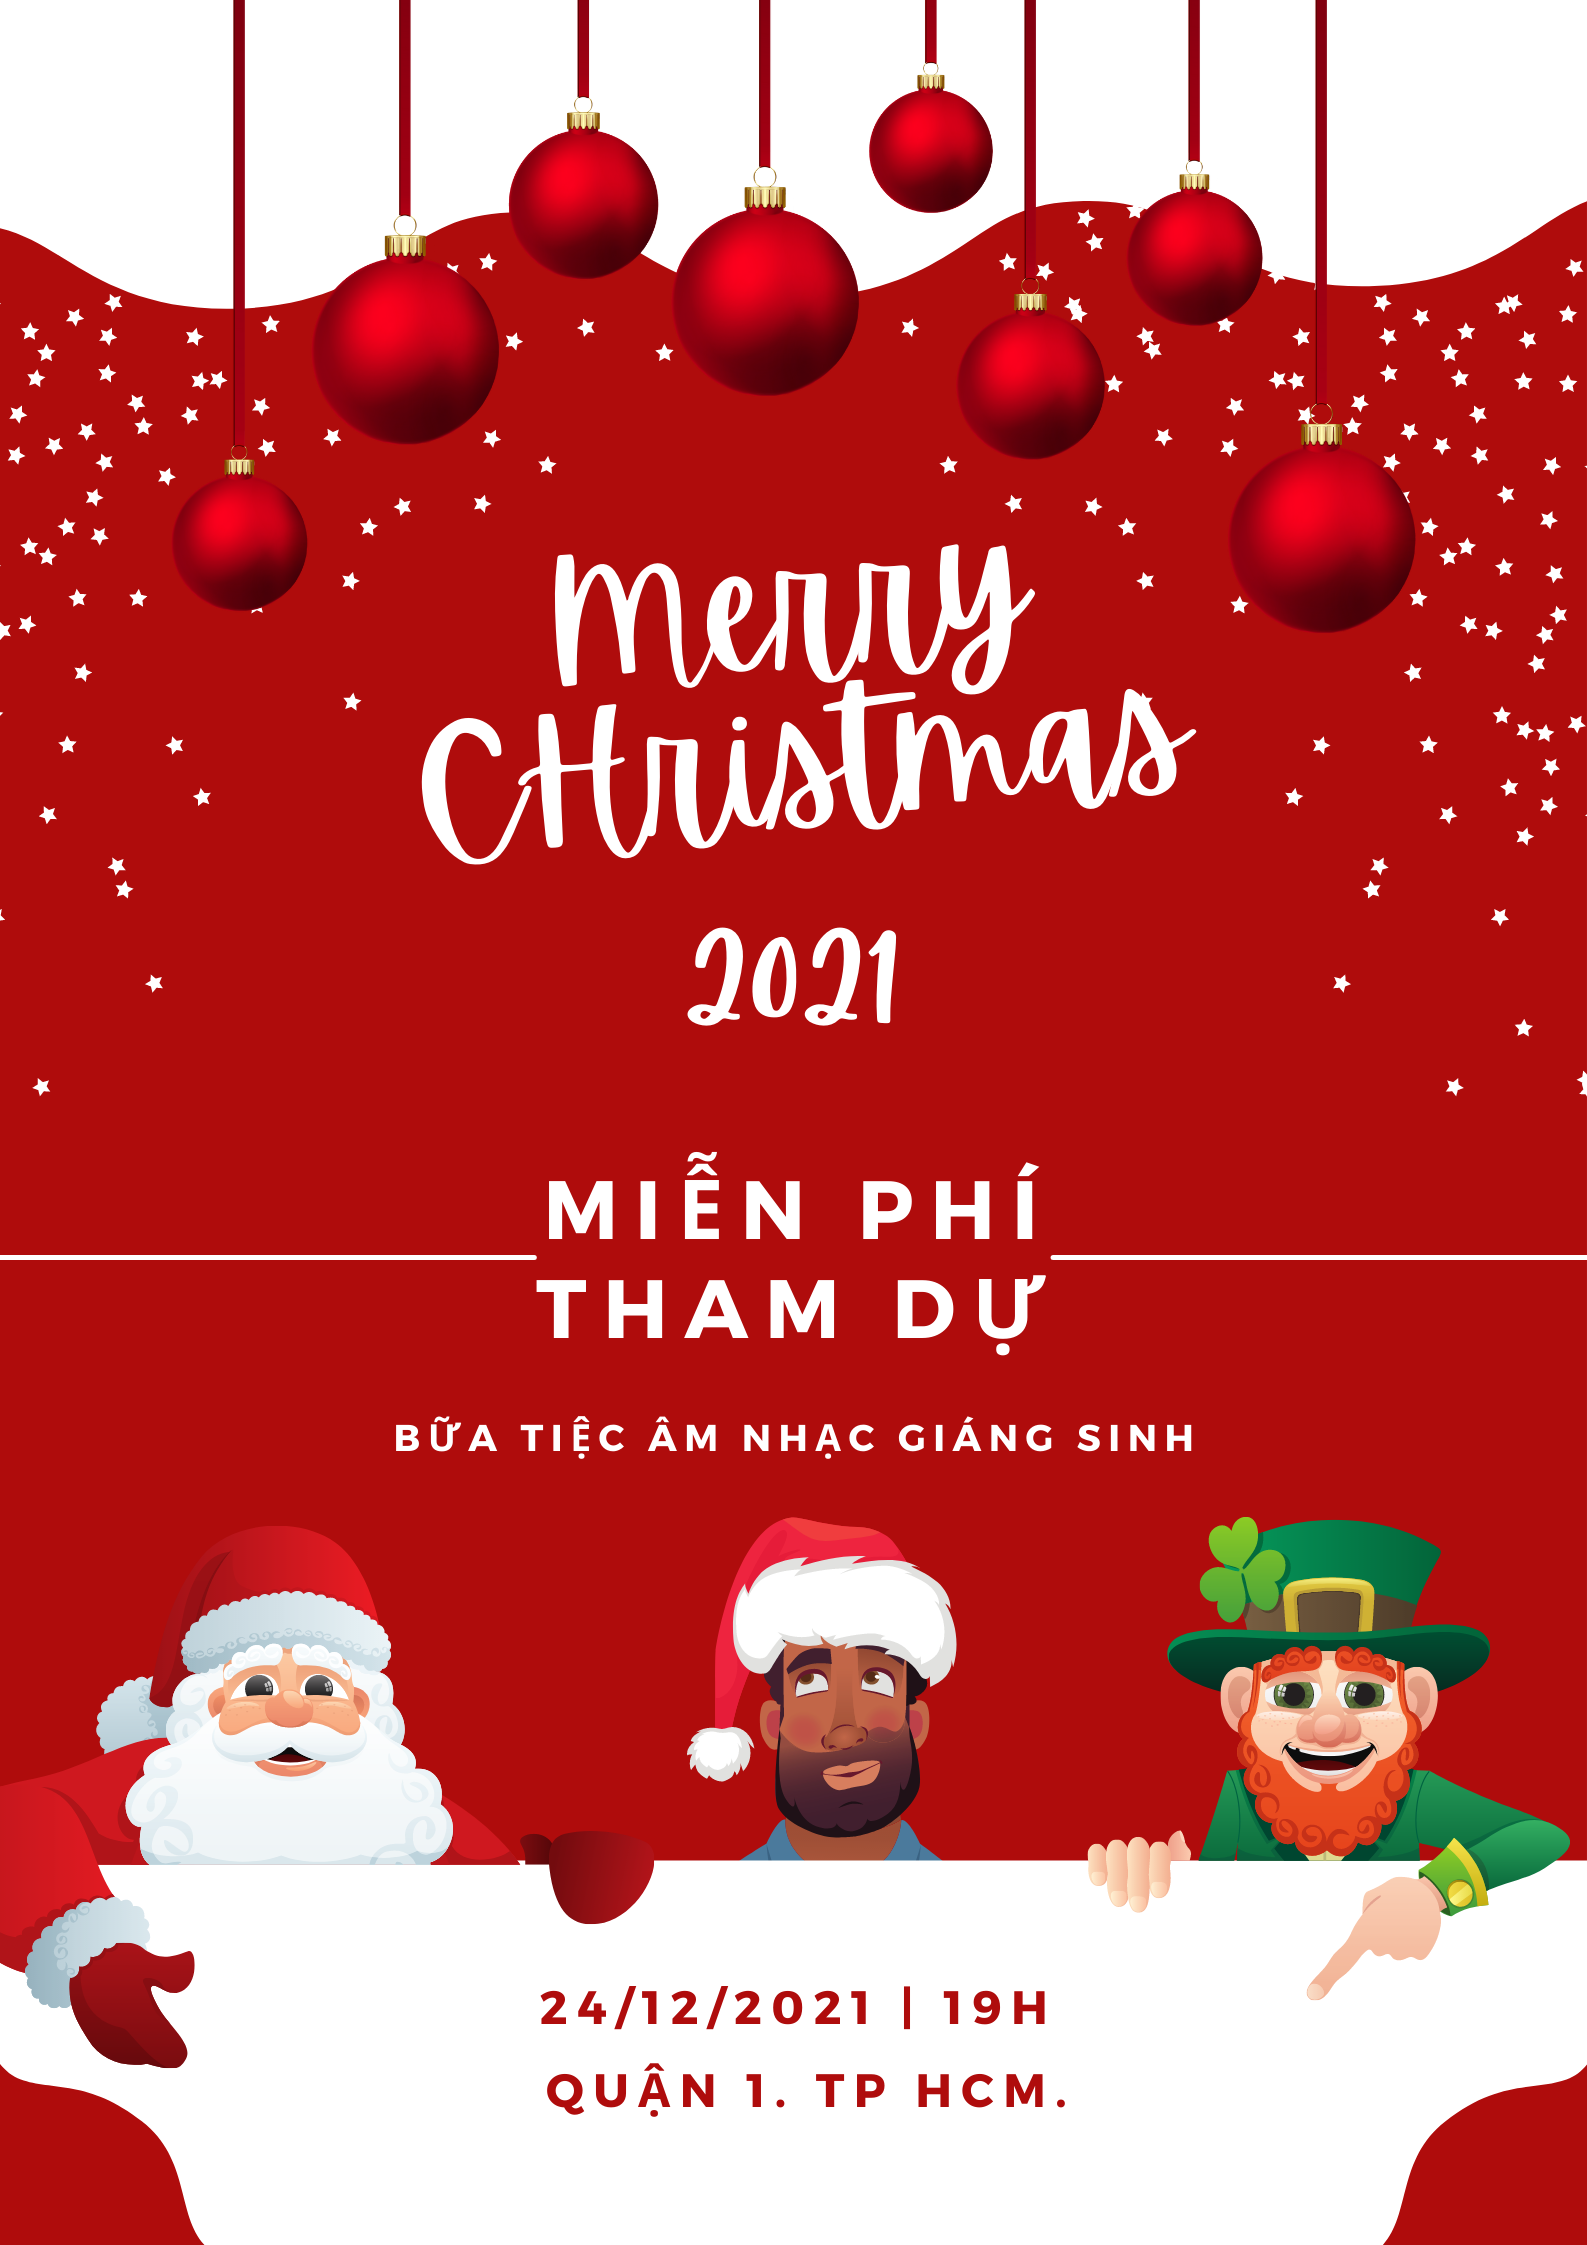 Top 25 mẫu poster Giáng sinh đẹp mắt cho mùa lễ năm 2021 - Ảnh 21.